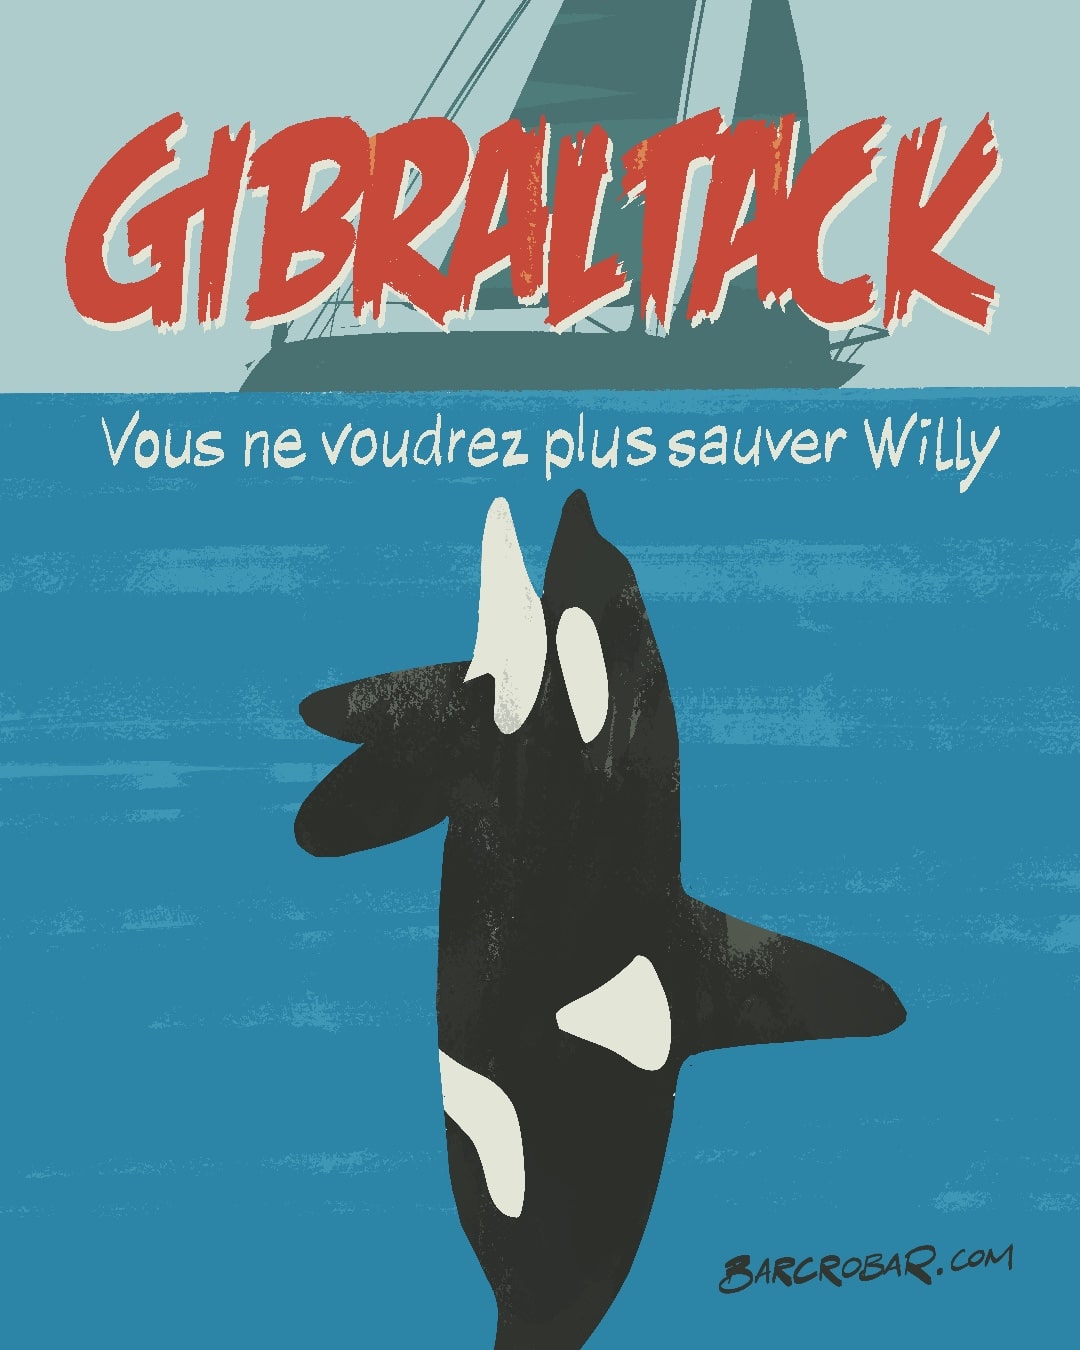 Multiplication des attaques d’orques contre les voiliers dans le détroit de Gibraltar